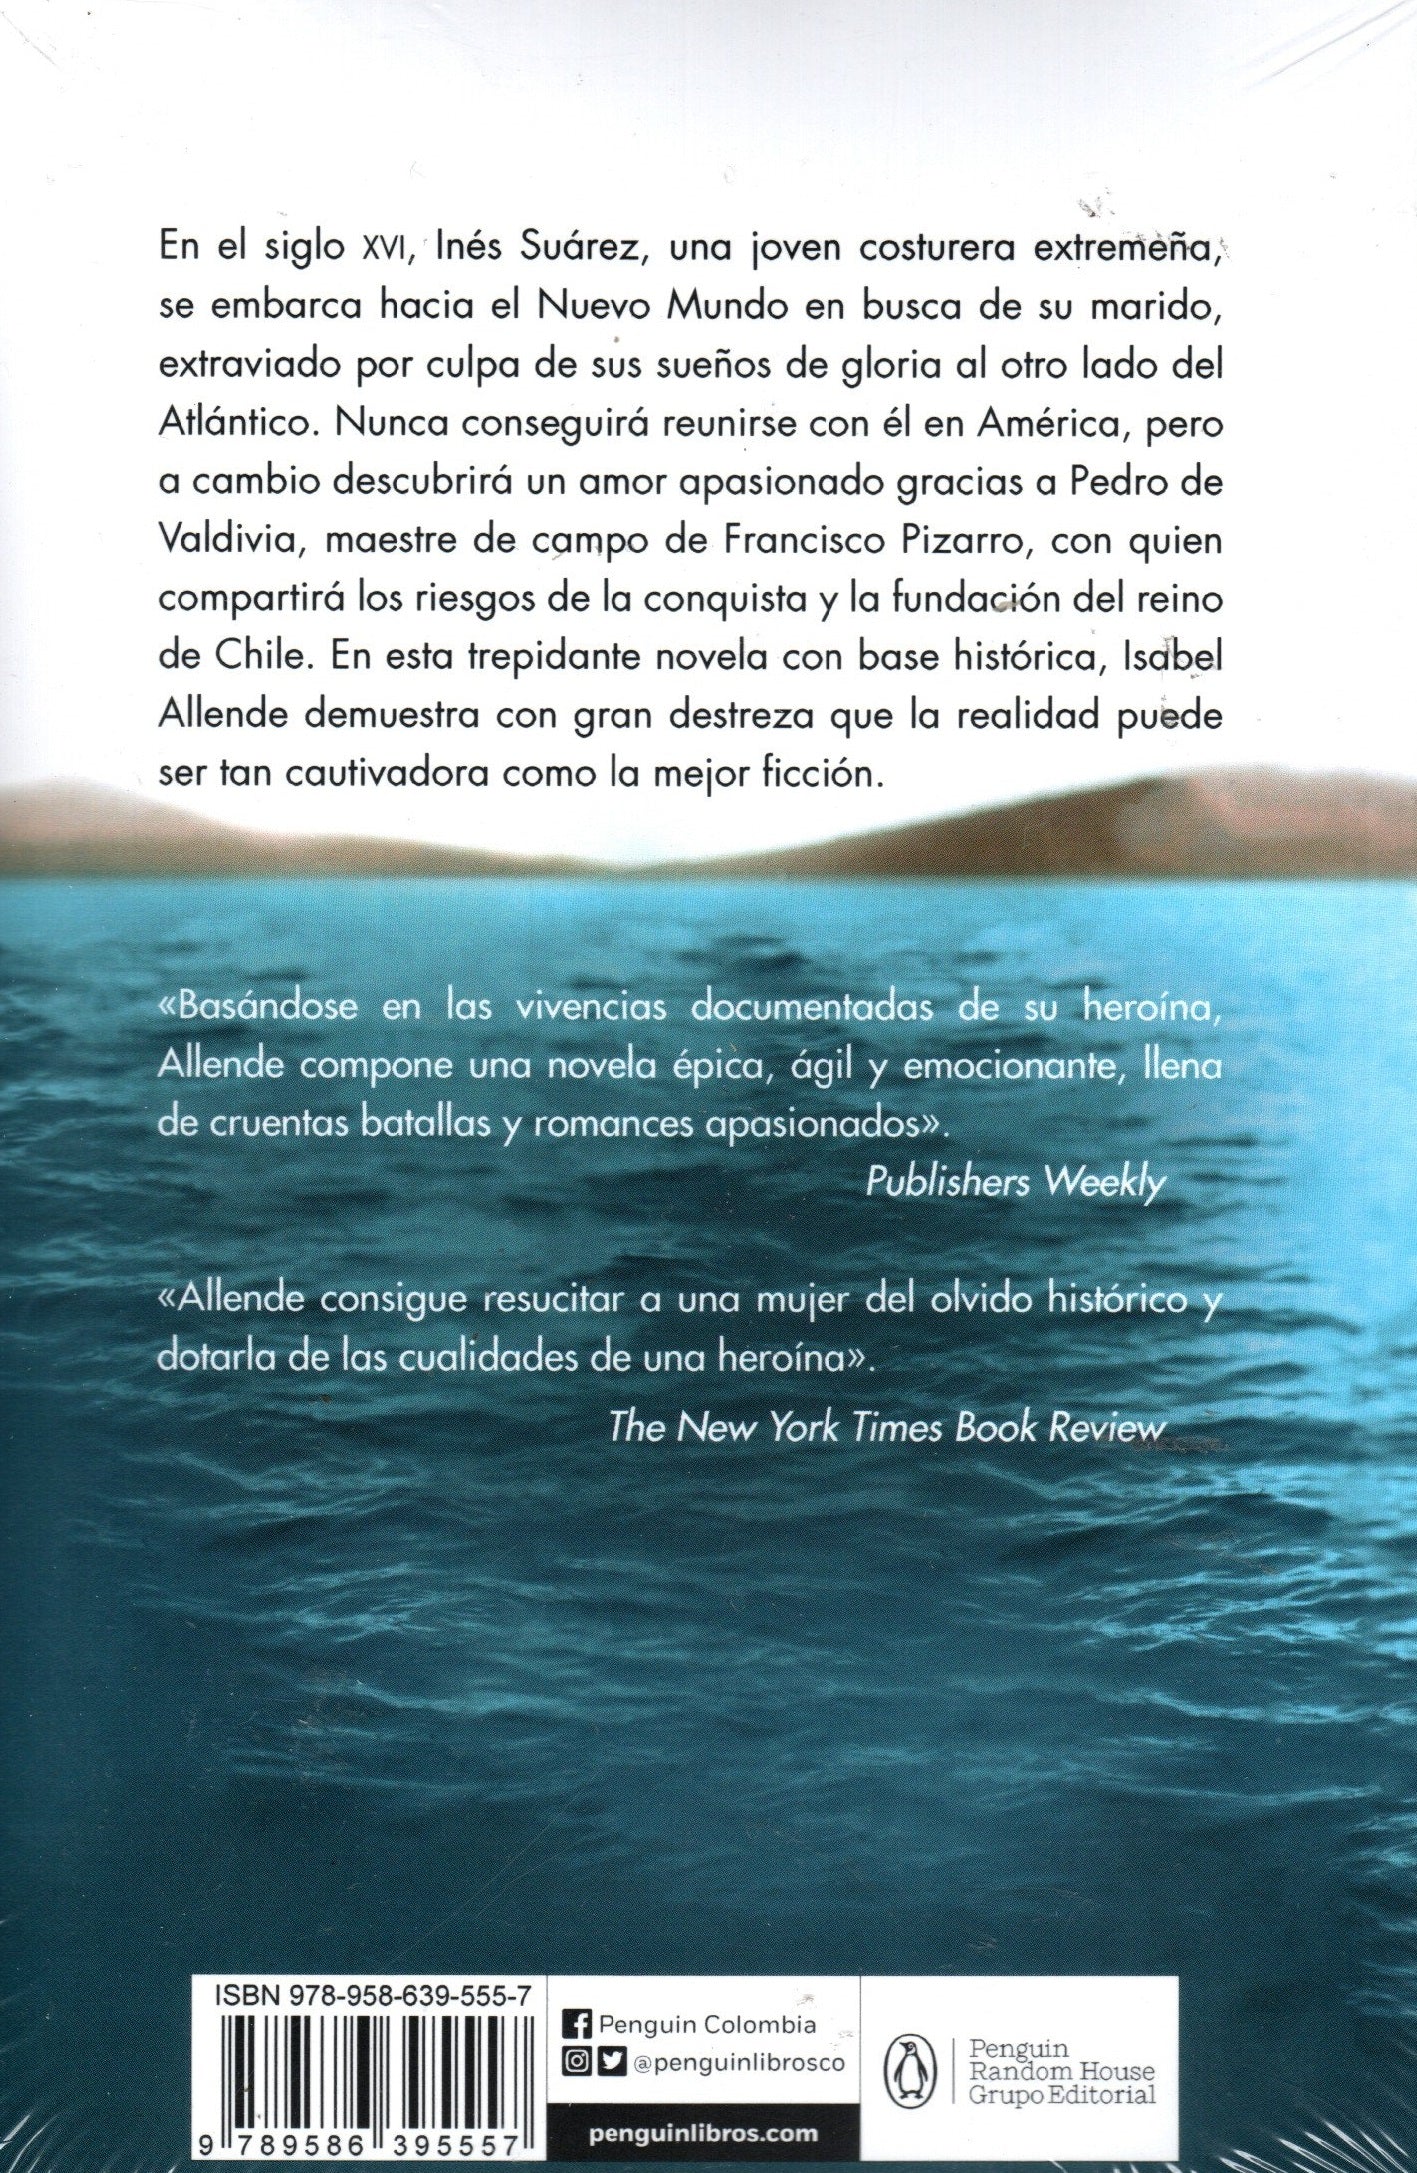 Libro Isabel Allende - Inés Del Alma Mía